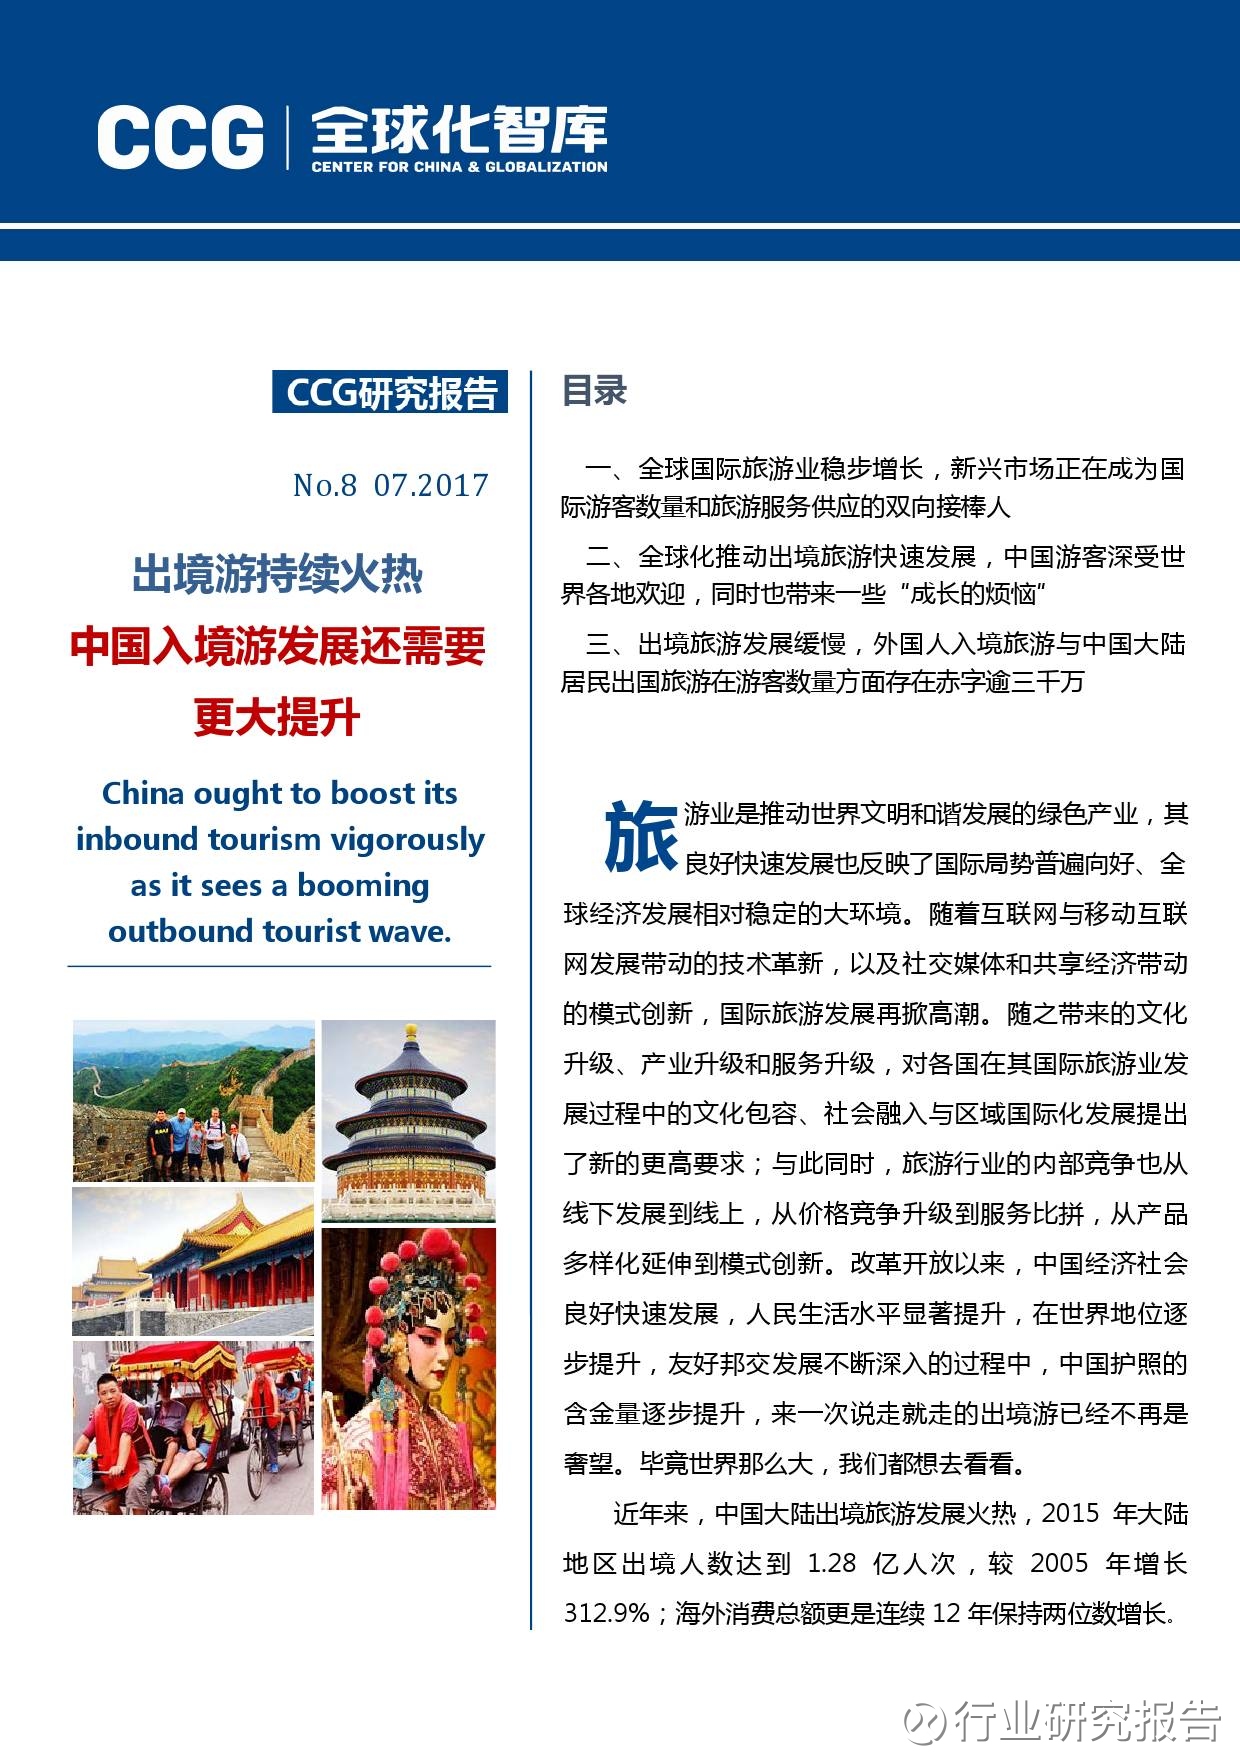 行业研究报告: 从出入境旅游看中国全球化发展